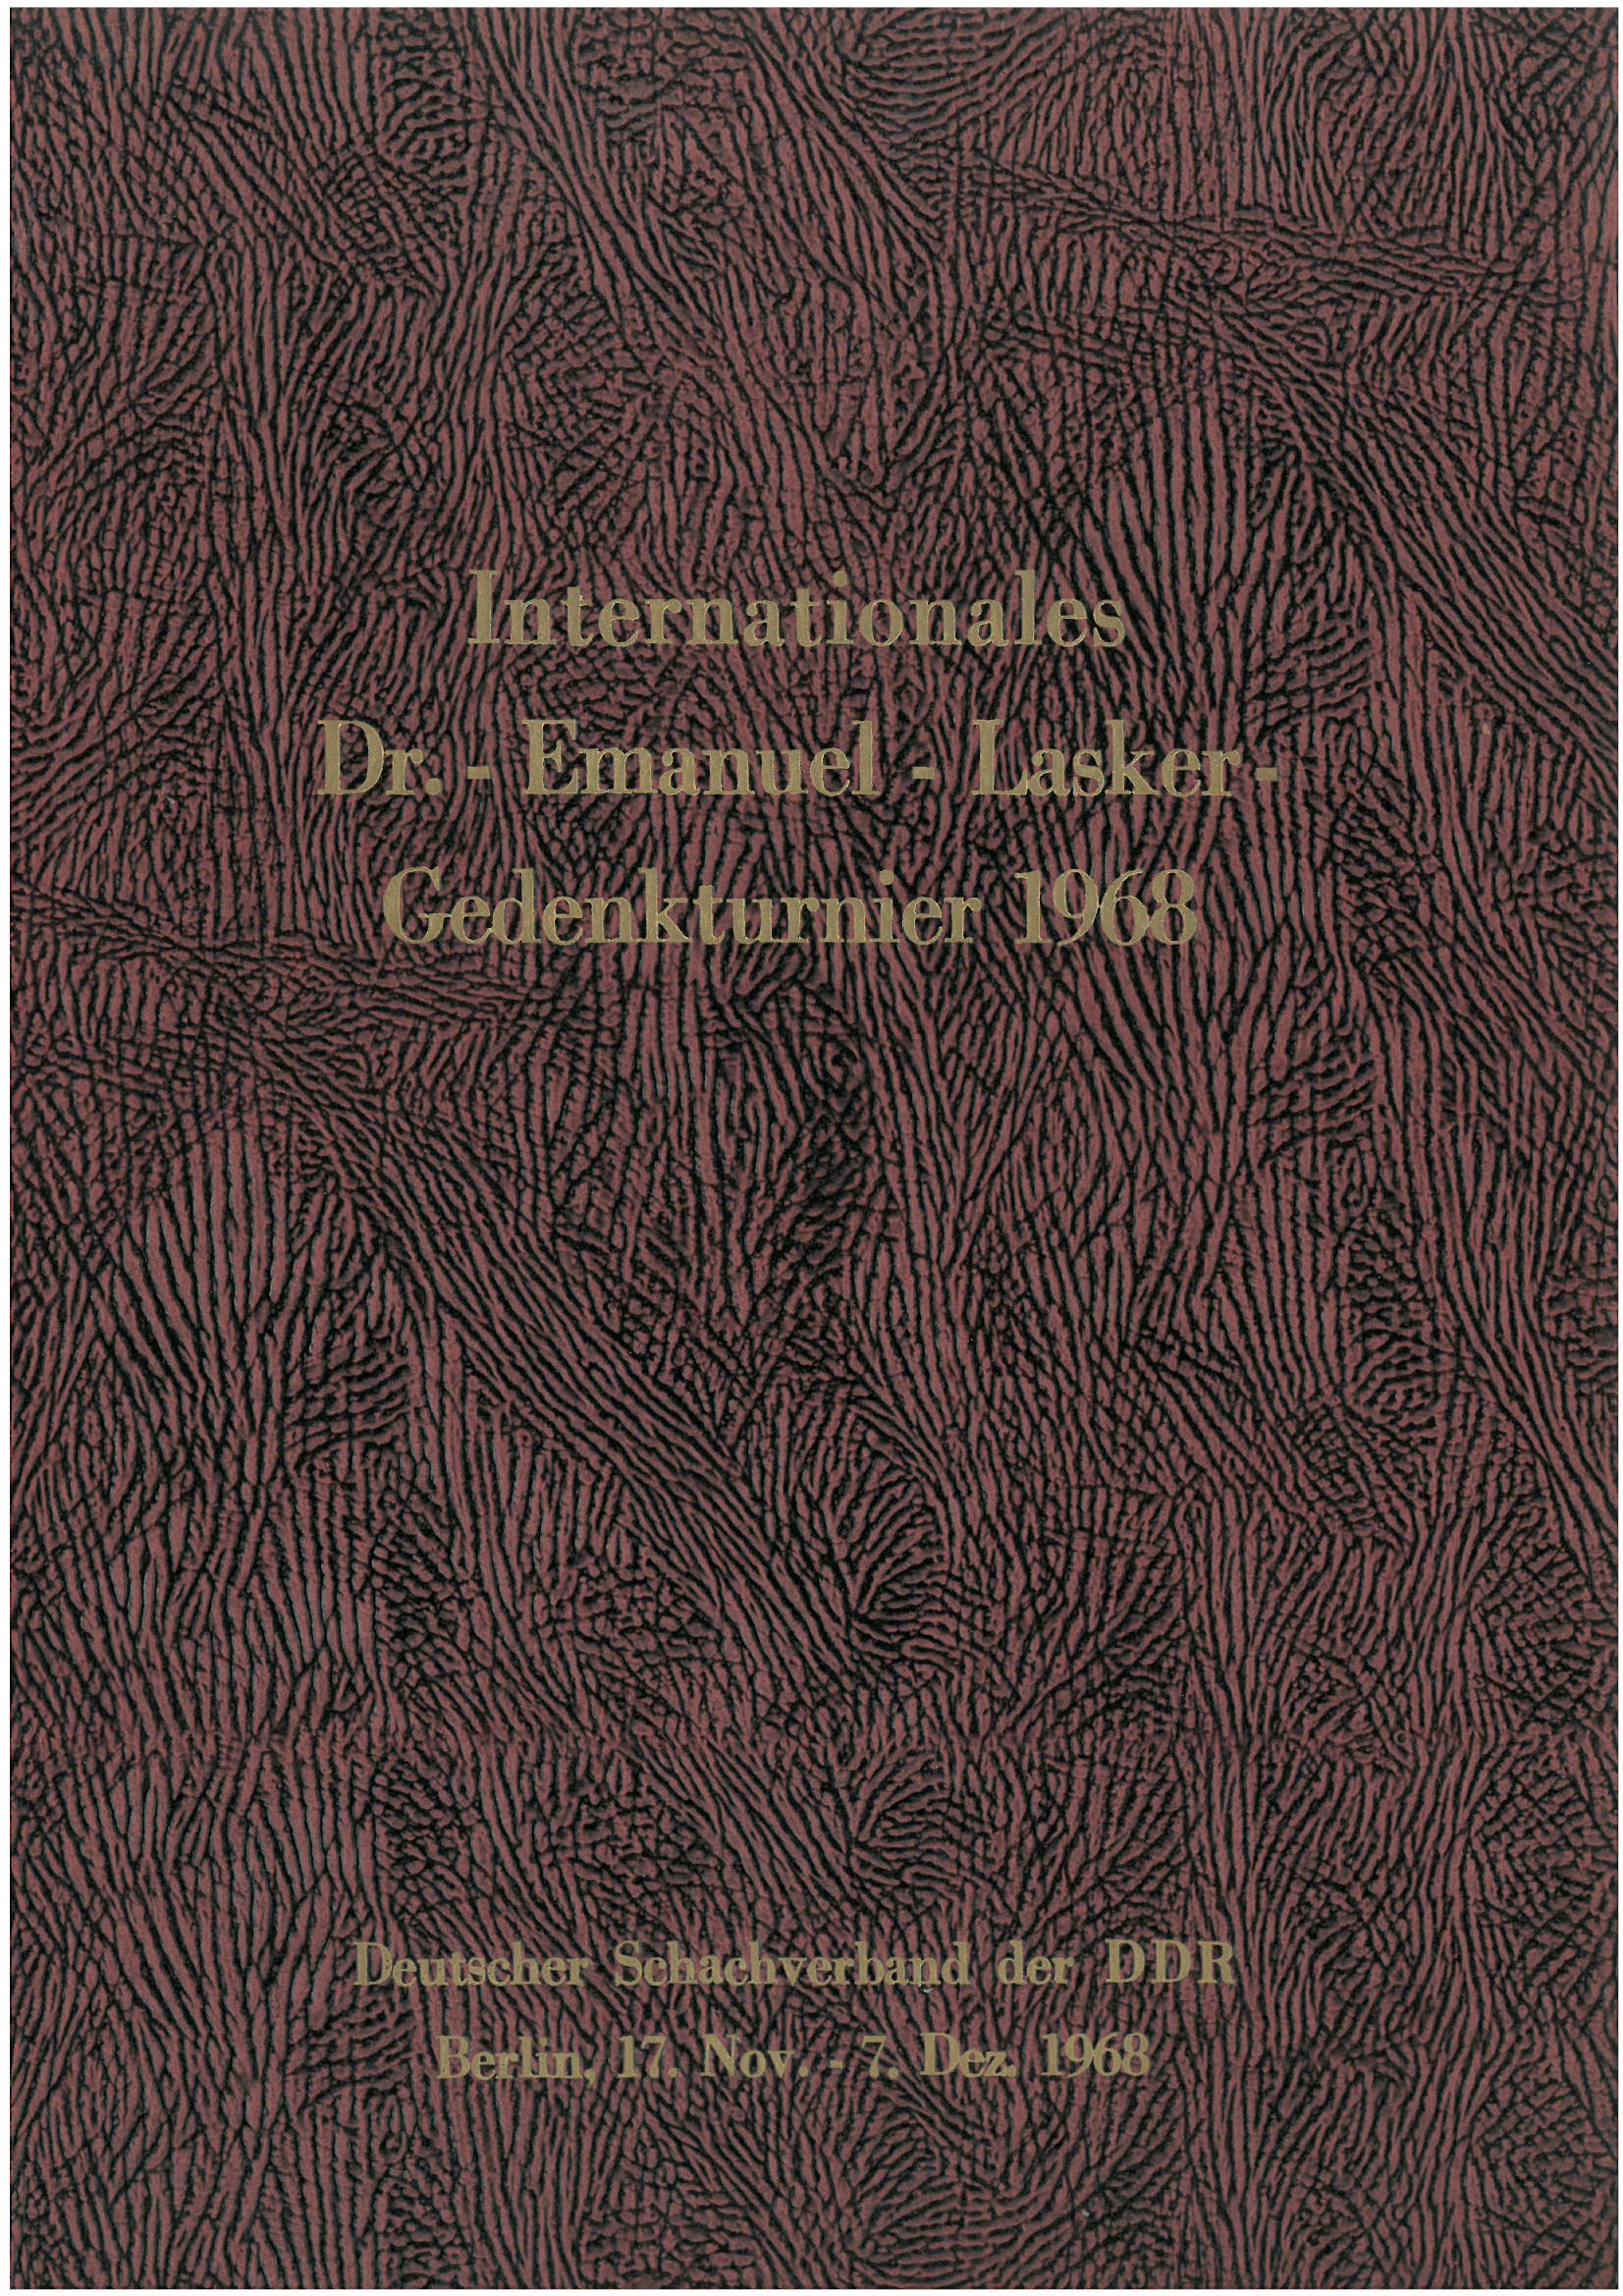 Internationales Dr.-Emanuel-Lasker-Gedenkturnier 1968